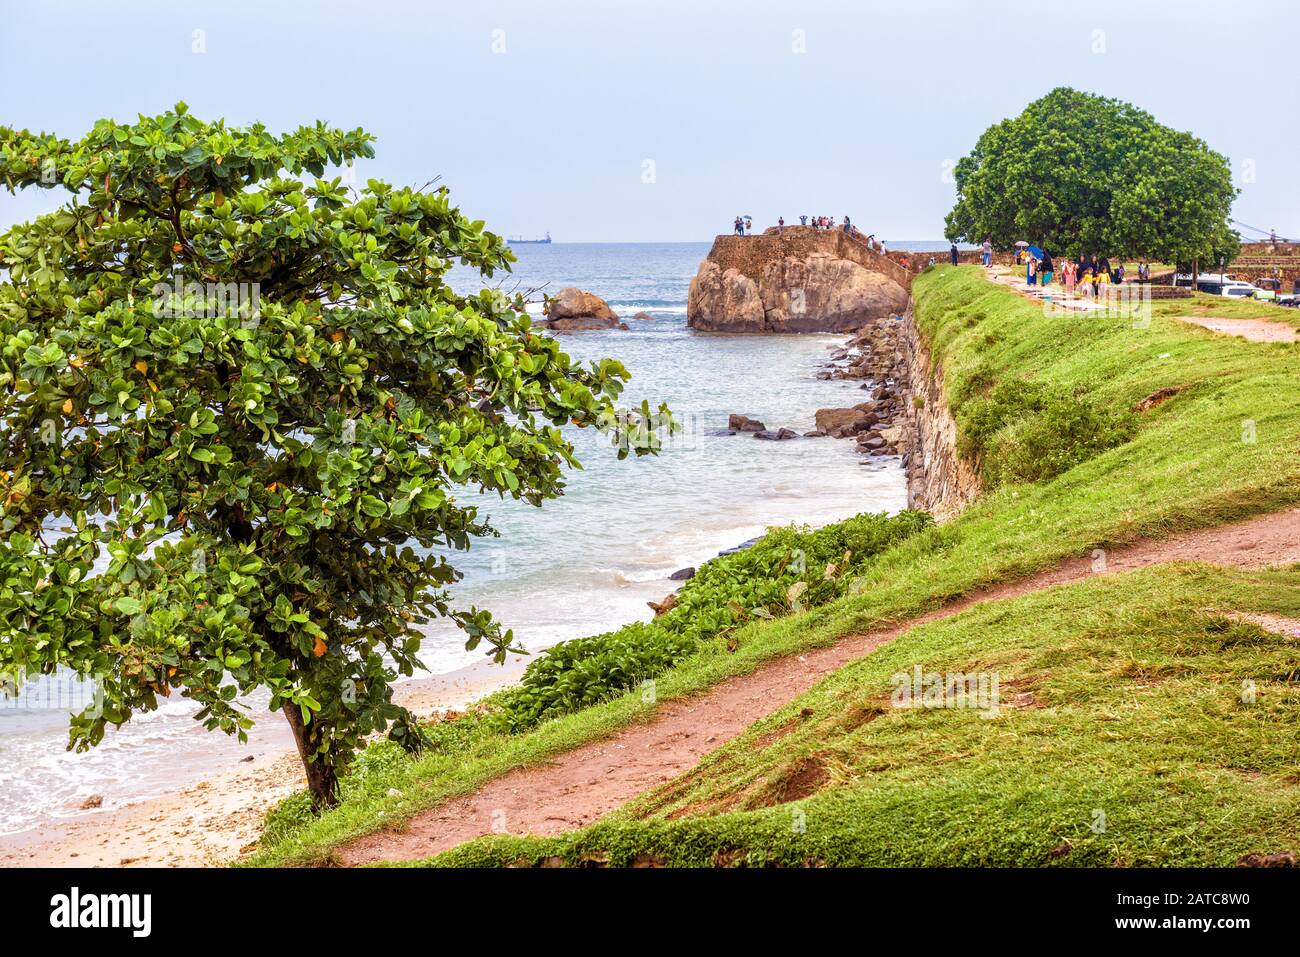 Ruinen von Galle Fort im Südwesten von Sri Lanka. Alte Befestigung an einer Meeresküste. Schöner Blick auf die Küste in der Stadt Galle. Tropische Landschaft von Stockfoto